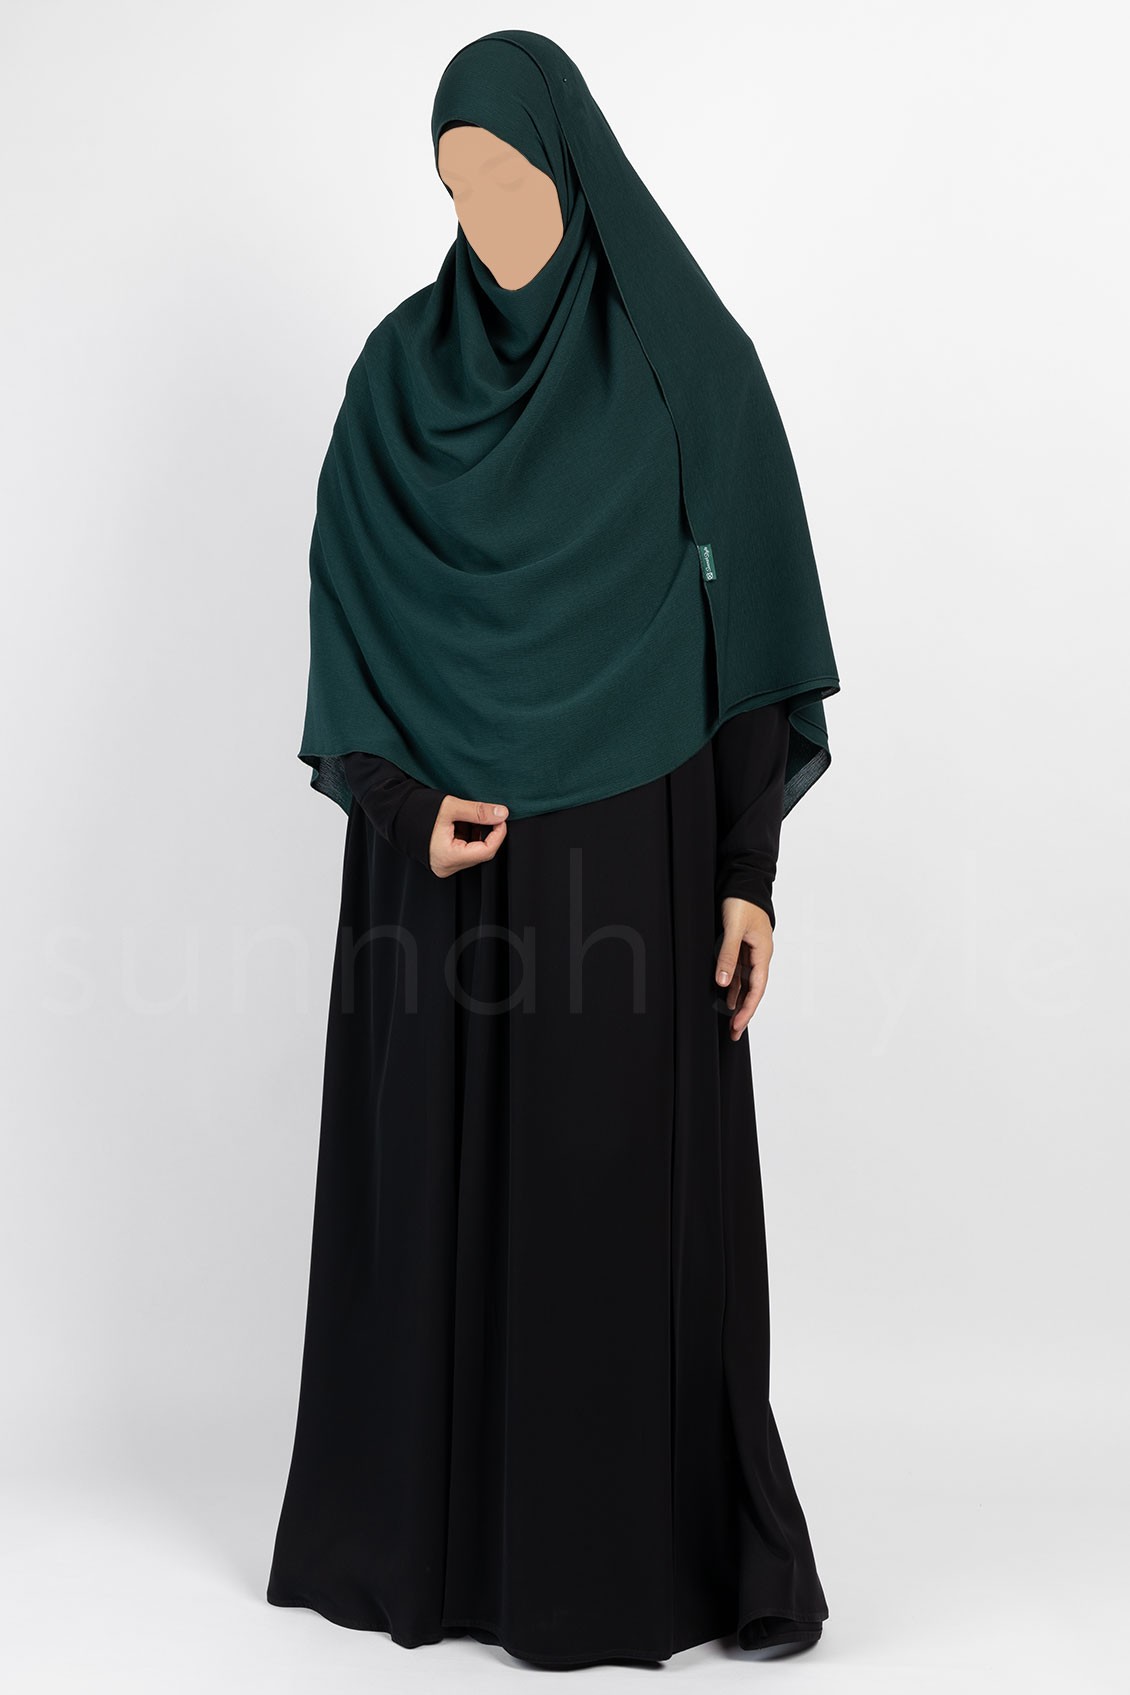 Sunnah Style Brushed Shayla XL Pine